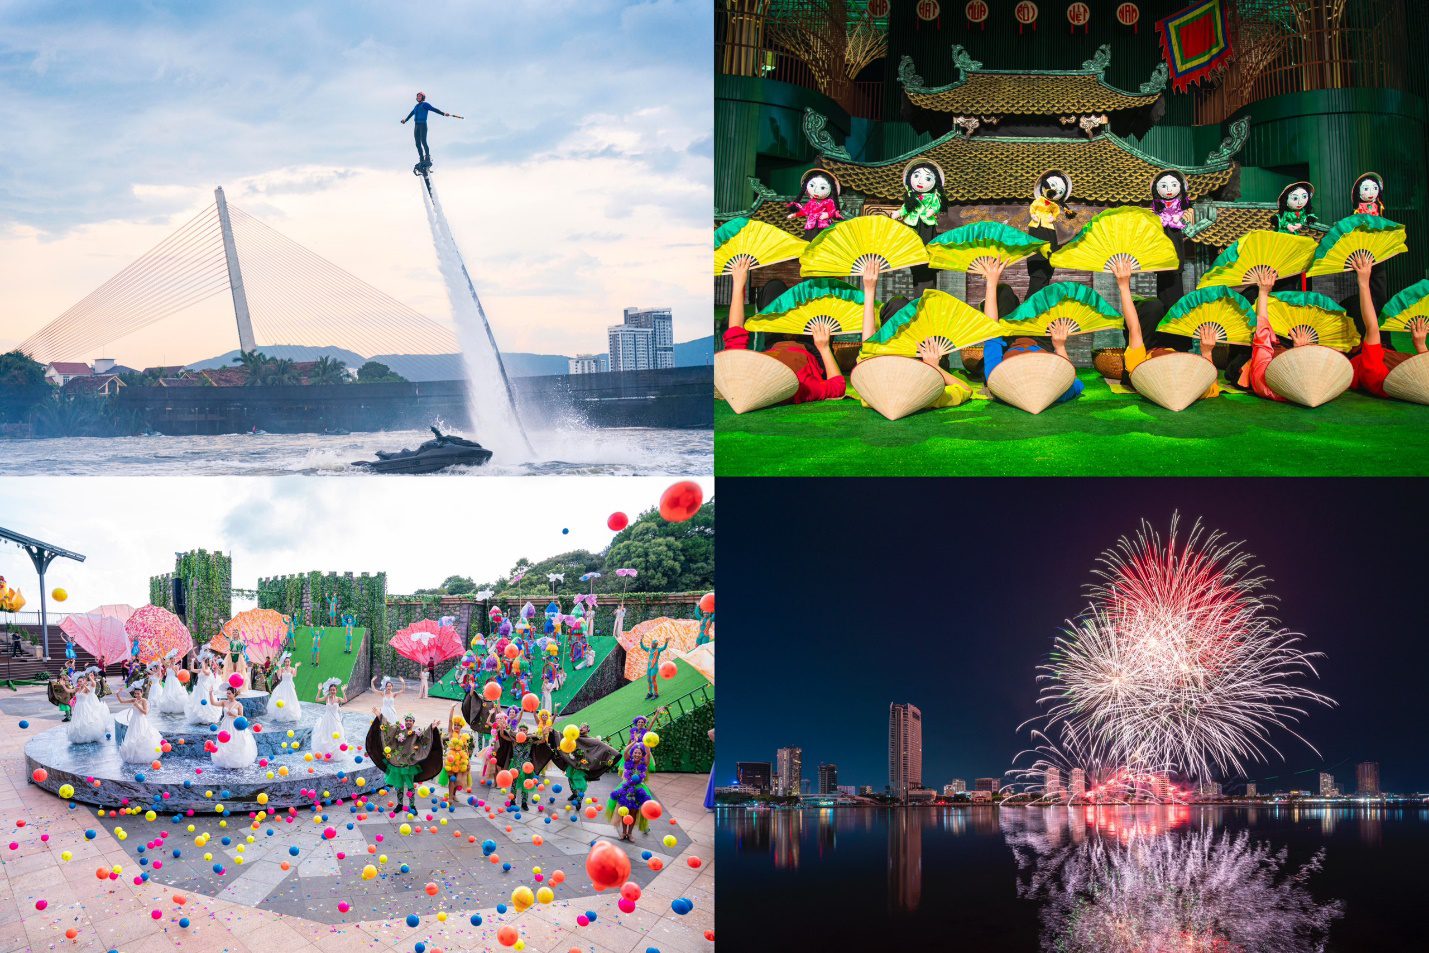 從左至右、從上至下分別為：「大江覺醒」表演、奧歐劇院的越南木偶戲 (Roi Viet) 表演、「仙花盛會」表演及 2024 年峴港國際煙花節。